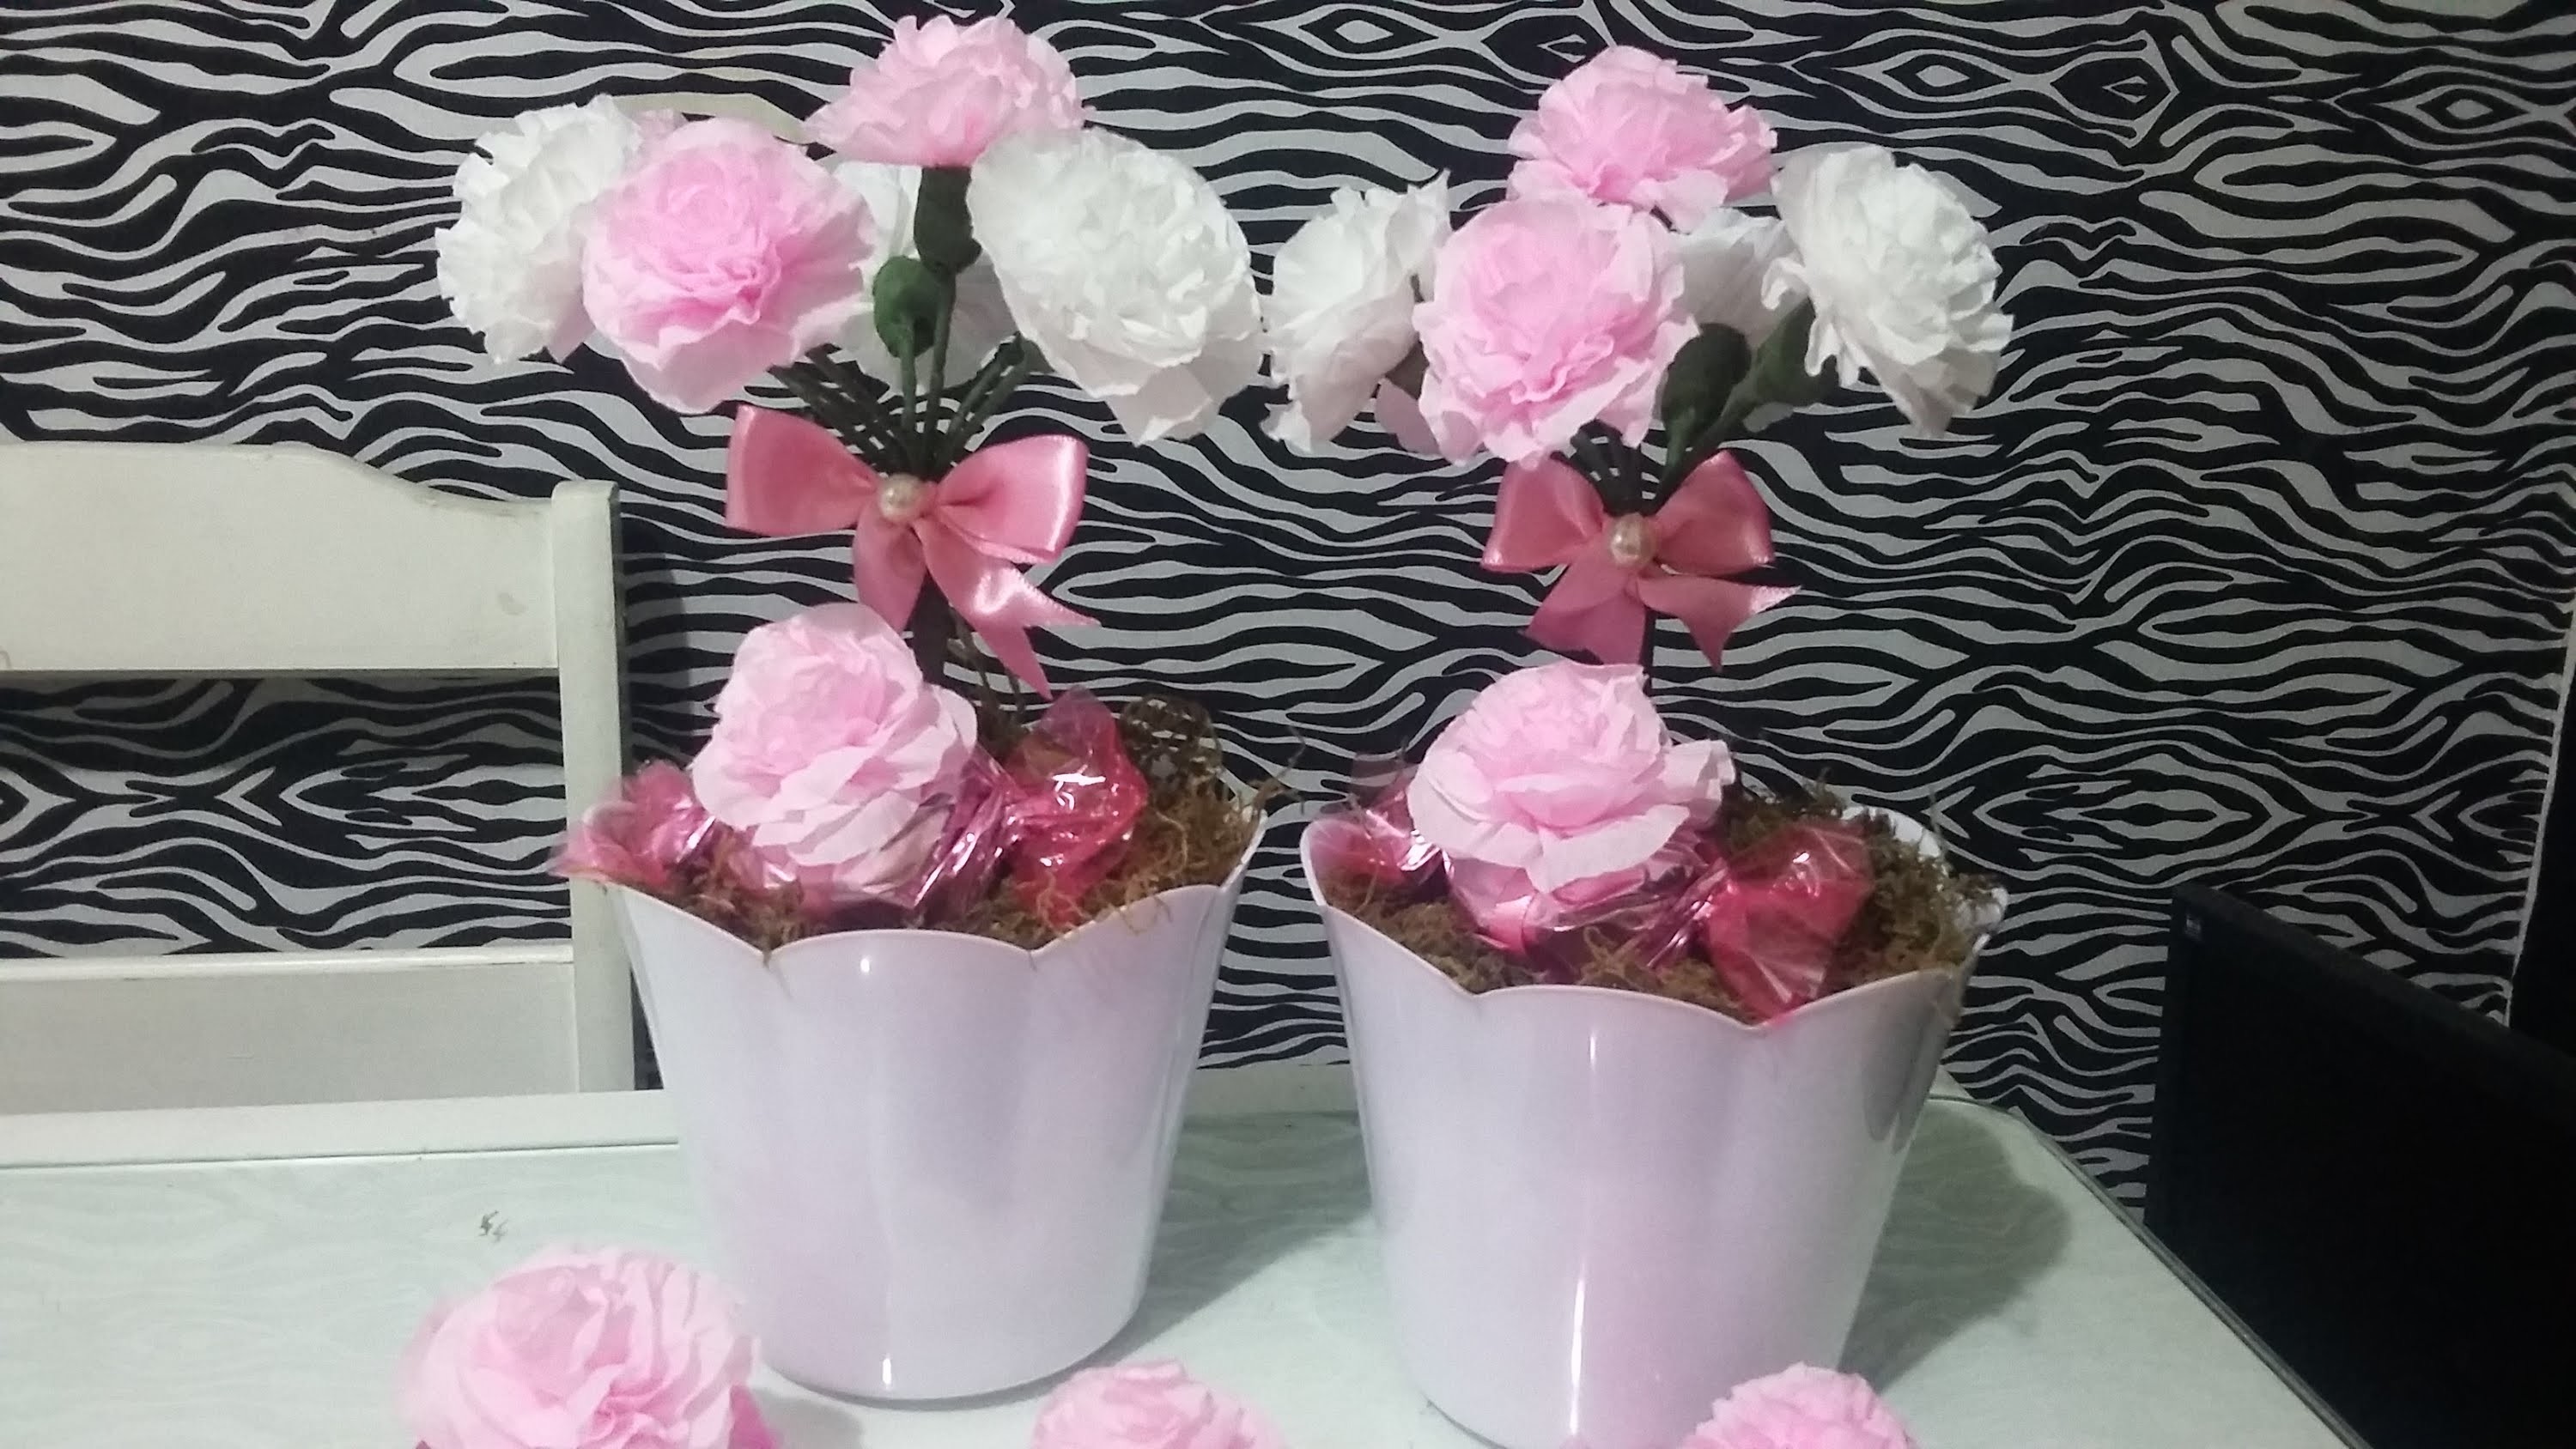 Aula 29 - Como fazer arranjos com flores de papel crepom (Artesanato)